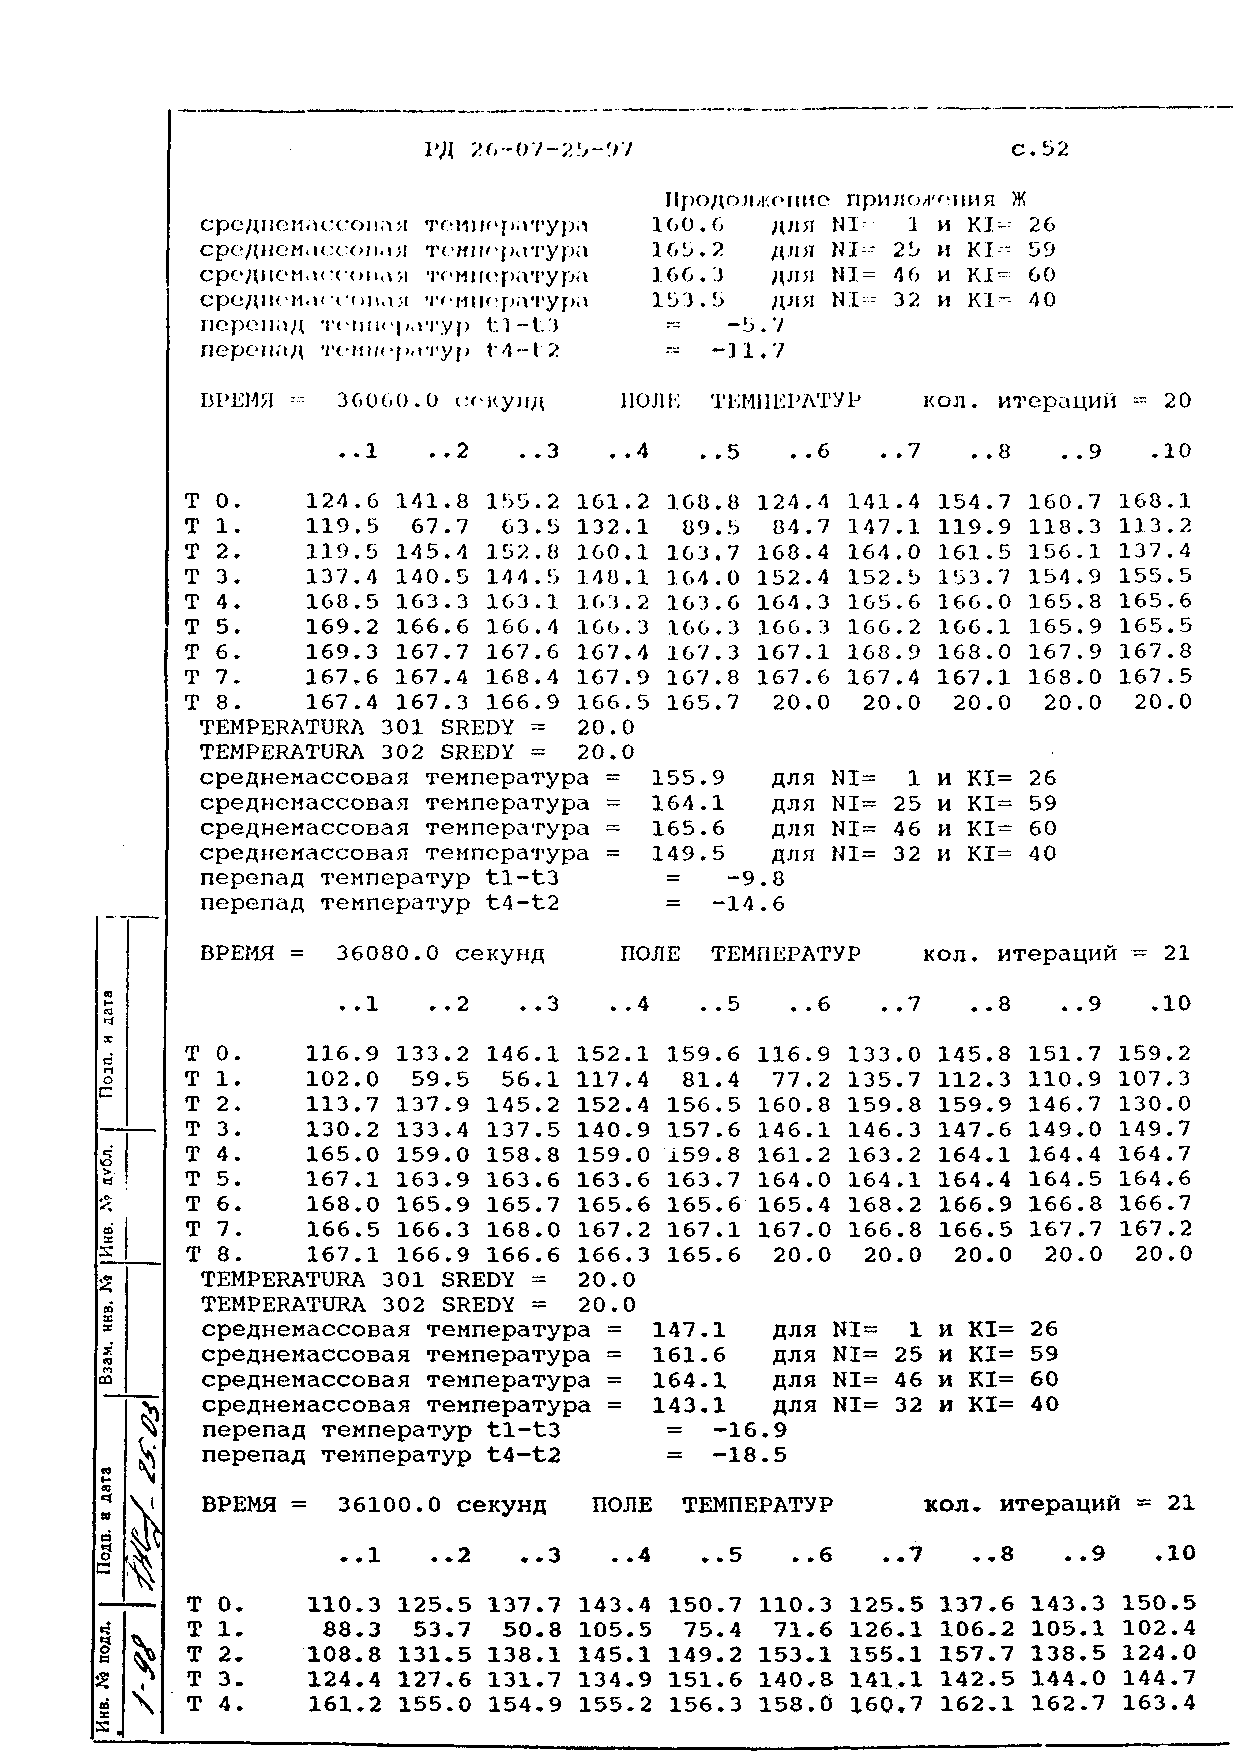 РД 26-07-25-97